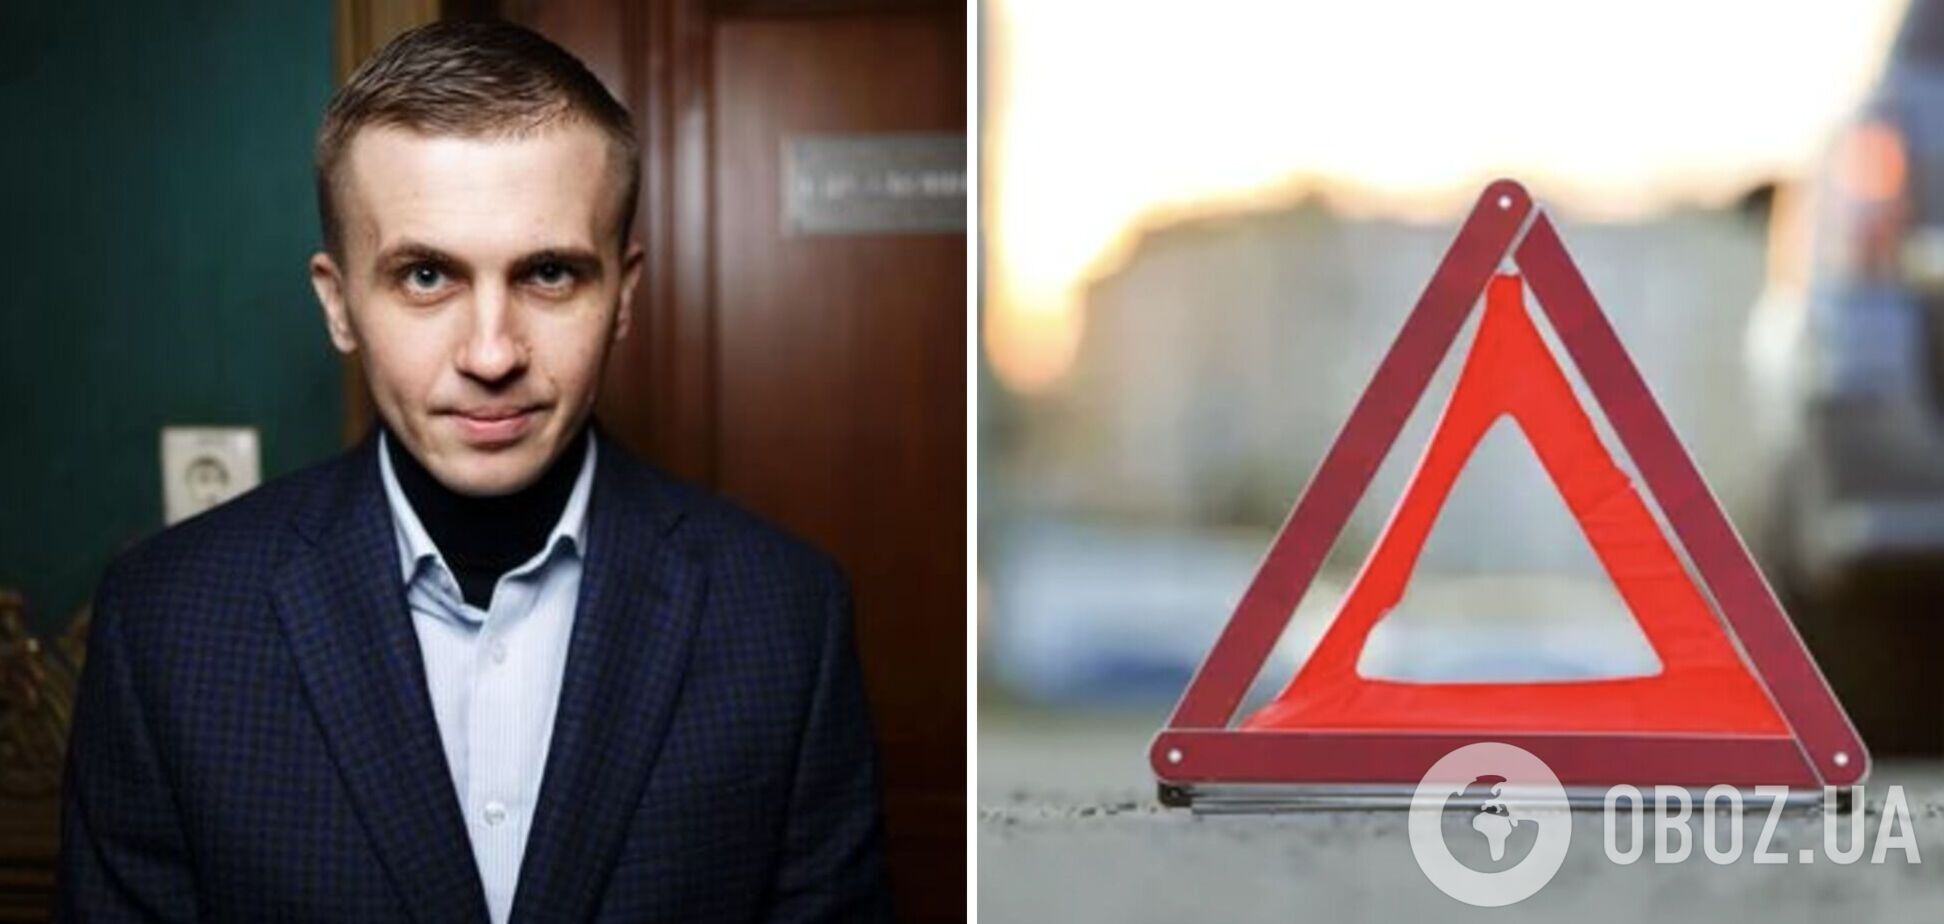 Известного украинского журналиста Ткача сбила машина: появились подробности